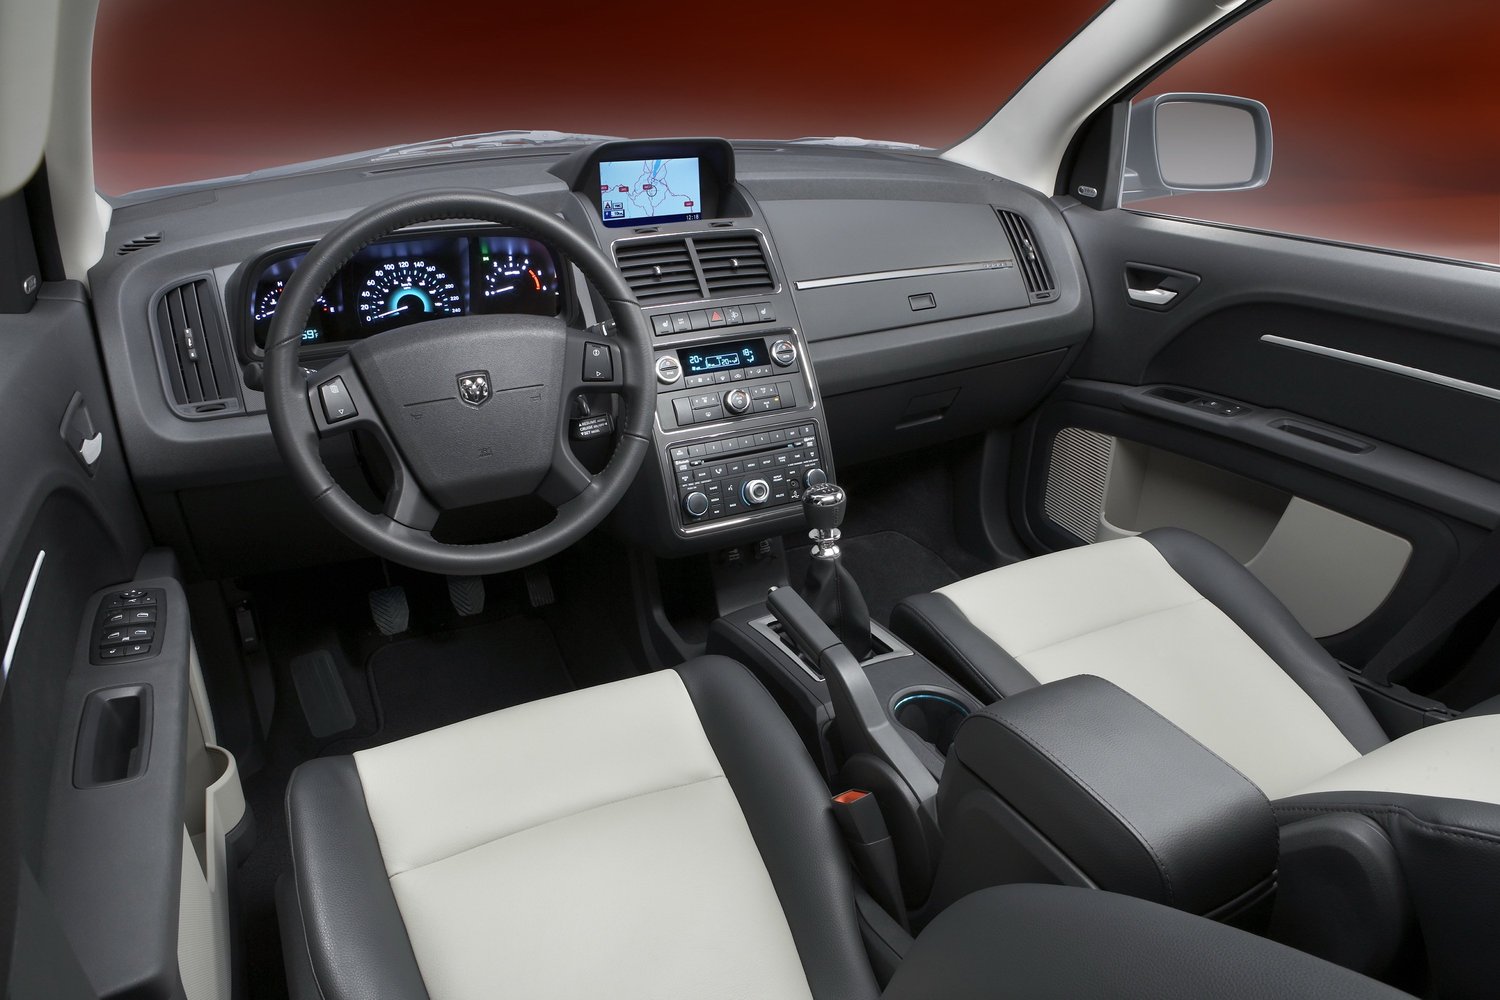 кроссовер Dodge Journey 2008 - 2016г выпуска модификация 2.0 AT (170 л.с.)